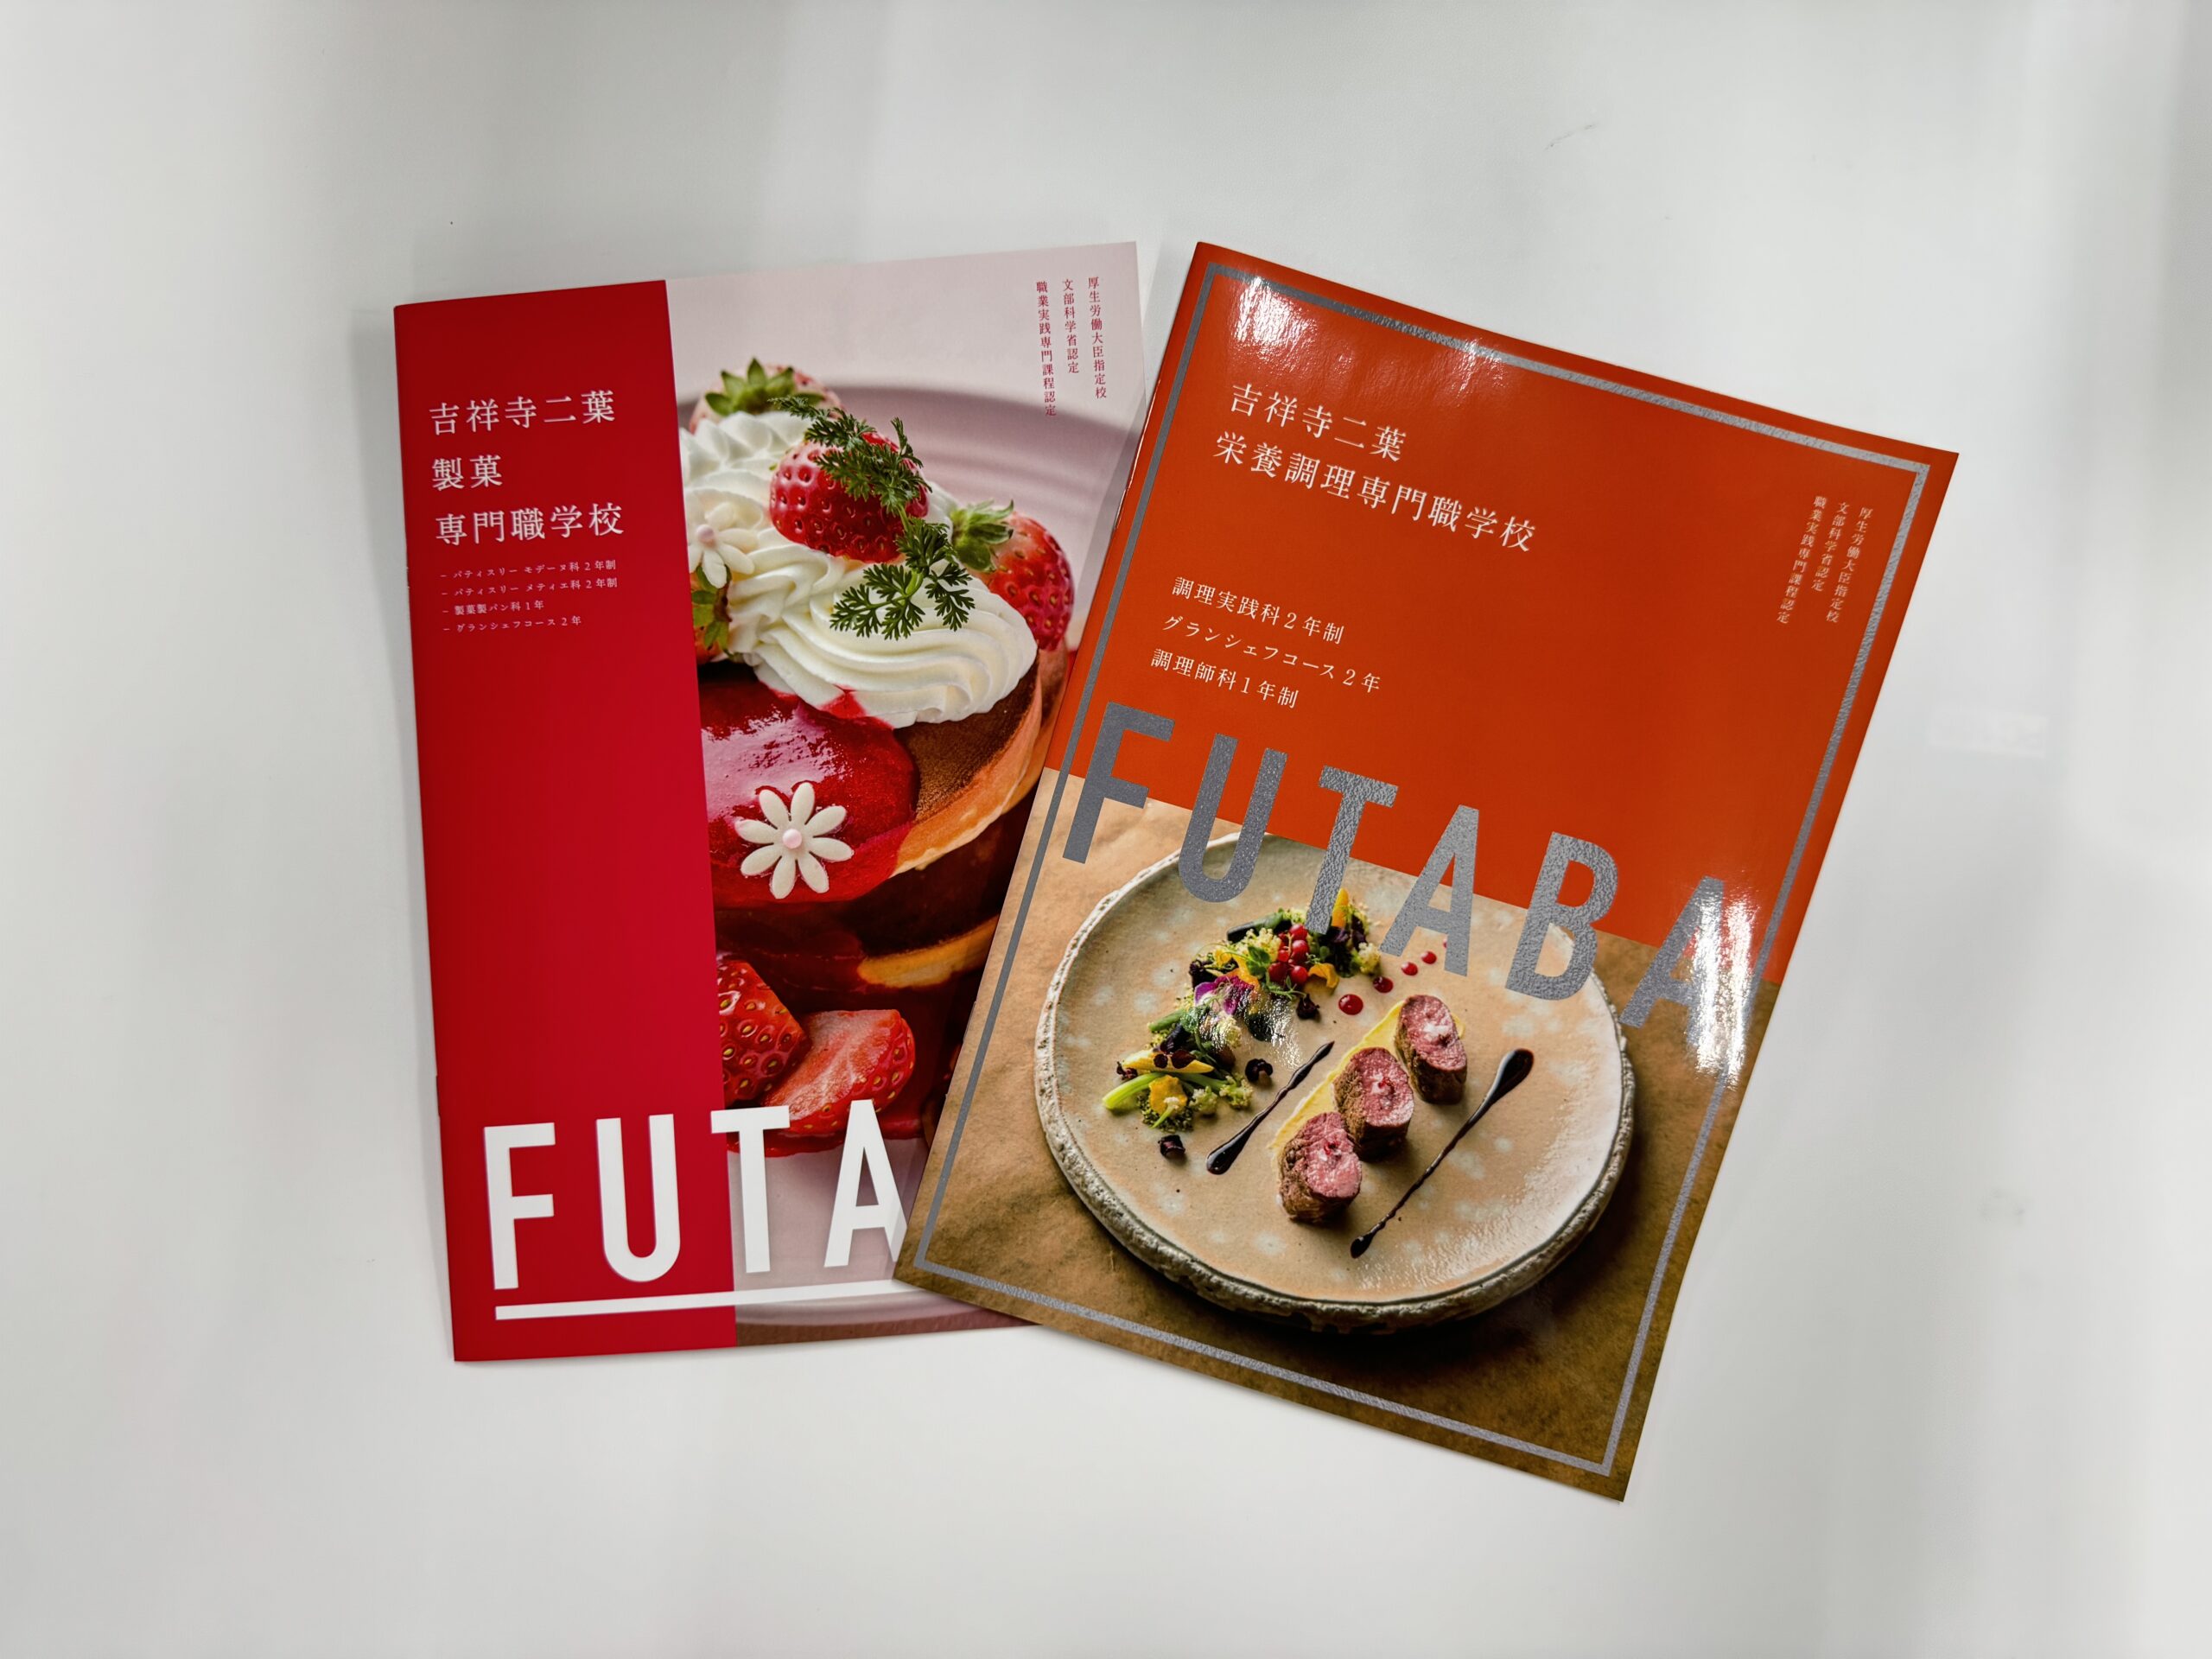 吉祥寺二葉栄養調理専門職学校のパンフレットに当ホテルの料理人が掲載されました。